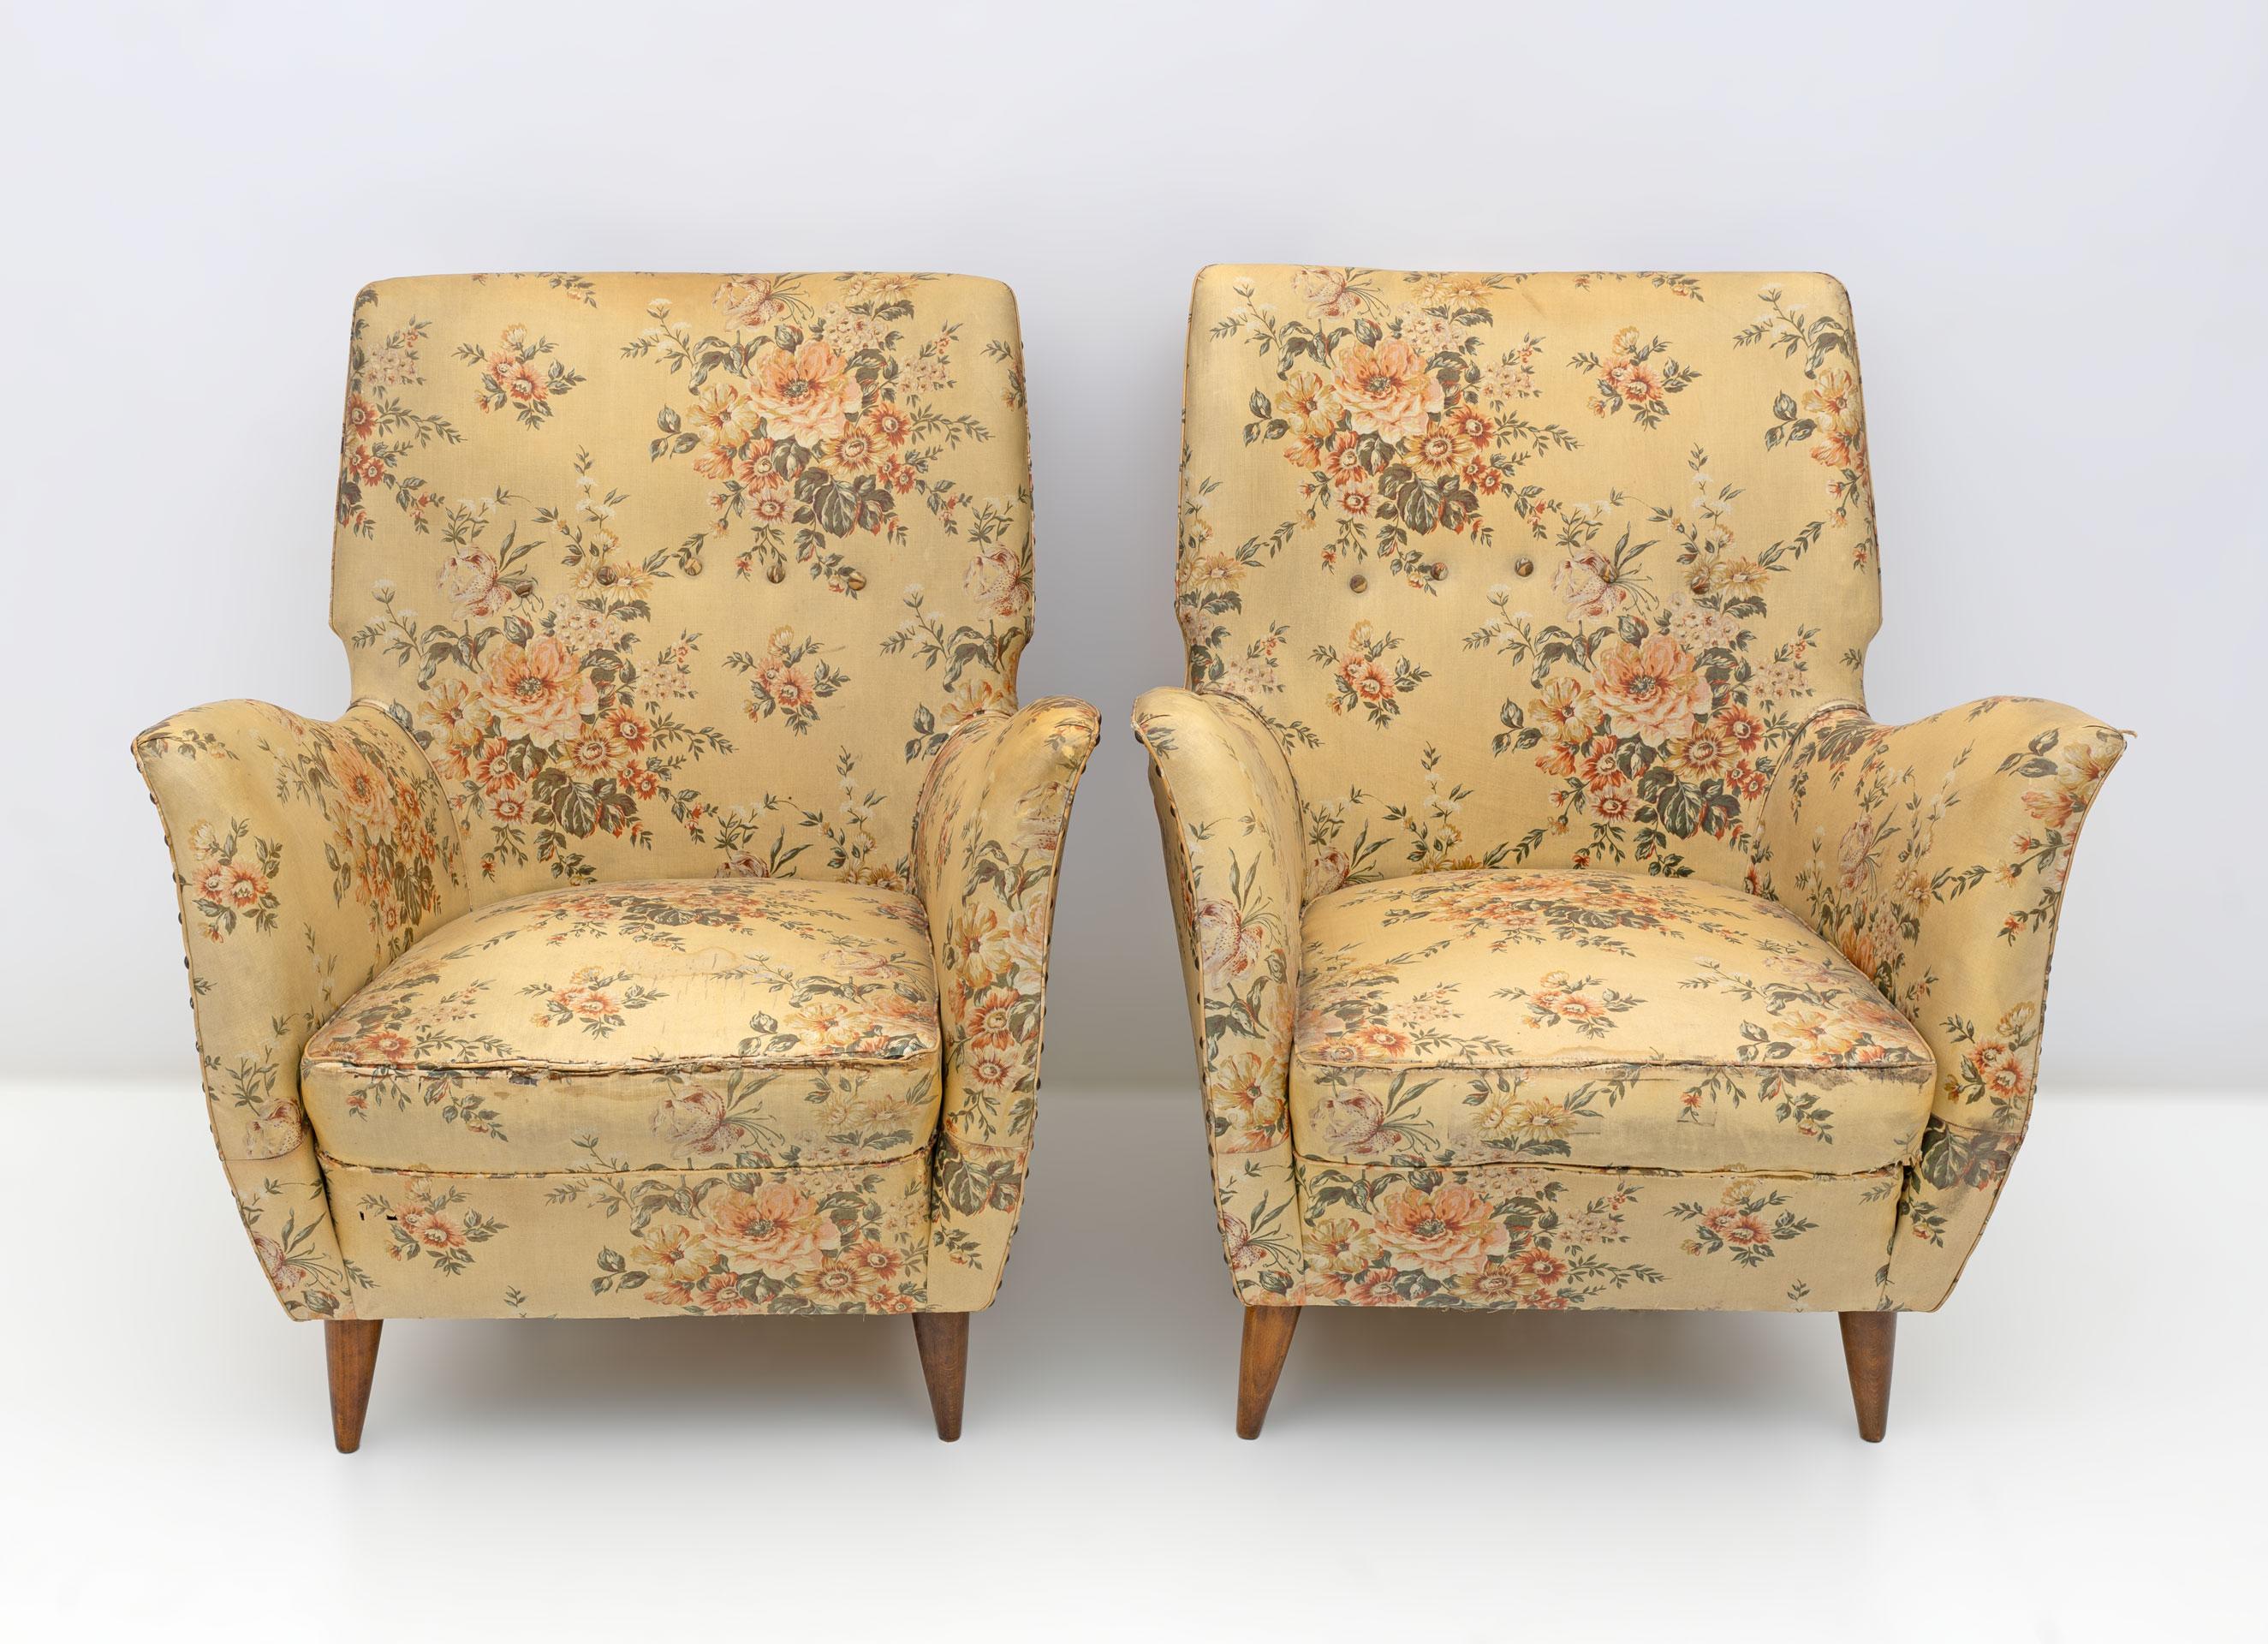 Elegantes und prächtiges Paar moderner Sessel aus der Jahrhundertmitte, Gio Ponti zugeschrieben, 1950, Edizioni ISA, Bergamo. Geformtes Profil, raffinierte Linien, sinnlicher und tiefer Komfort. Die Stühle haben die ursprüngliche bedruckte